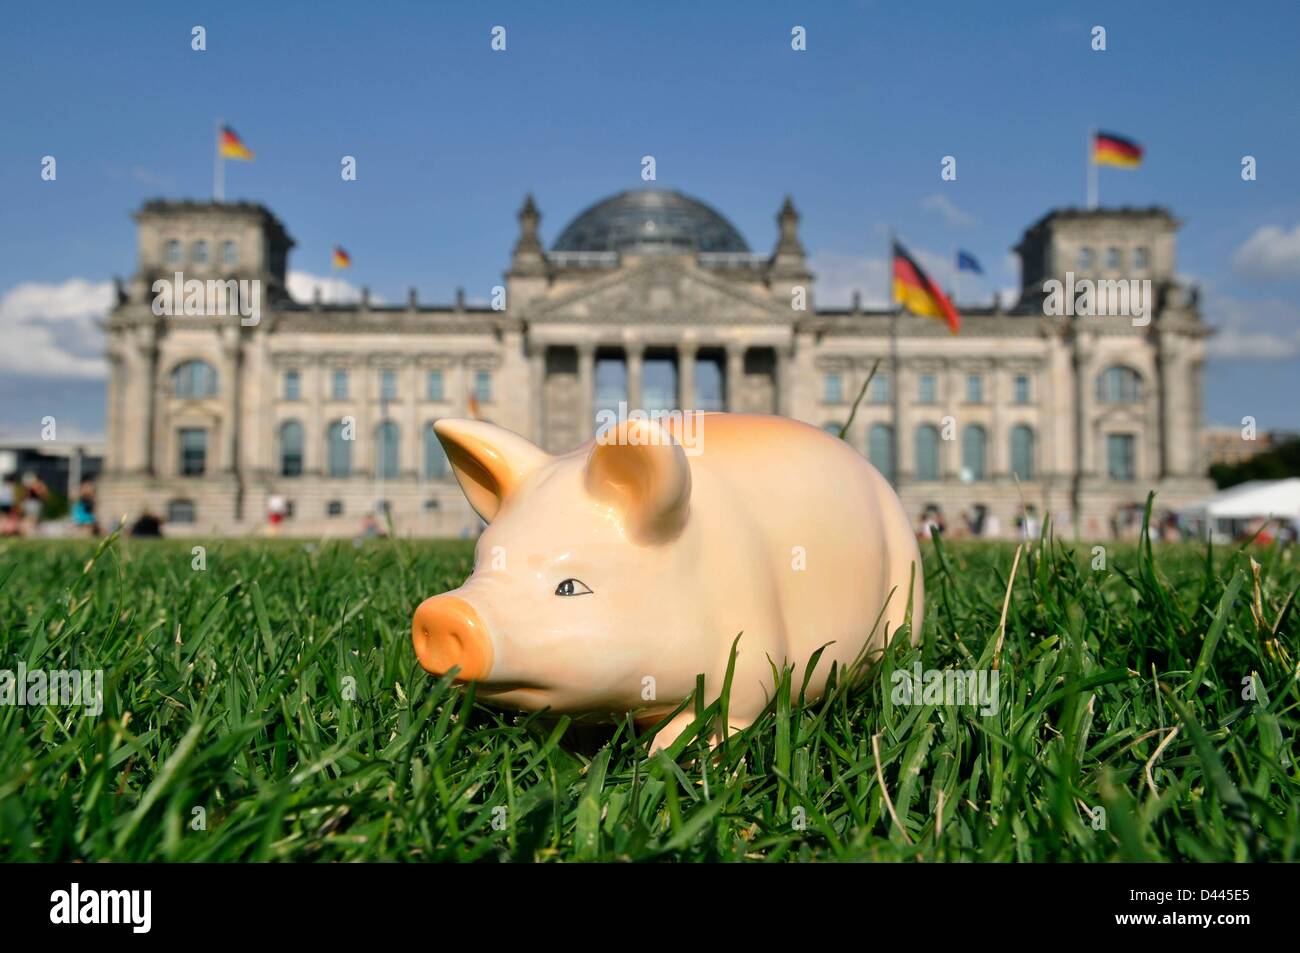 Illustrazione - Una banca del piggy è rappresentata in piedi sul prato davanti al Reichstag tedesco a Berlino, tedesco, 10 luglio 2011. Fotoarchiv für ZeitgeschichteS.Steinach Foto Stock